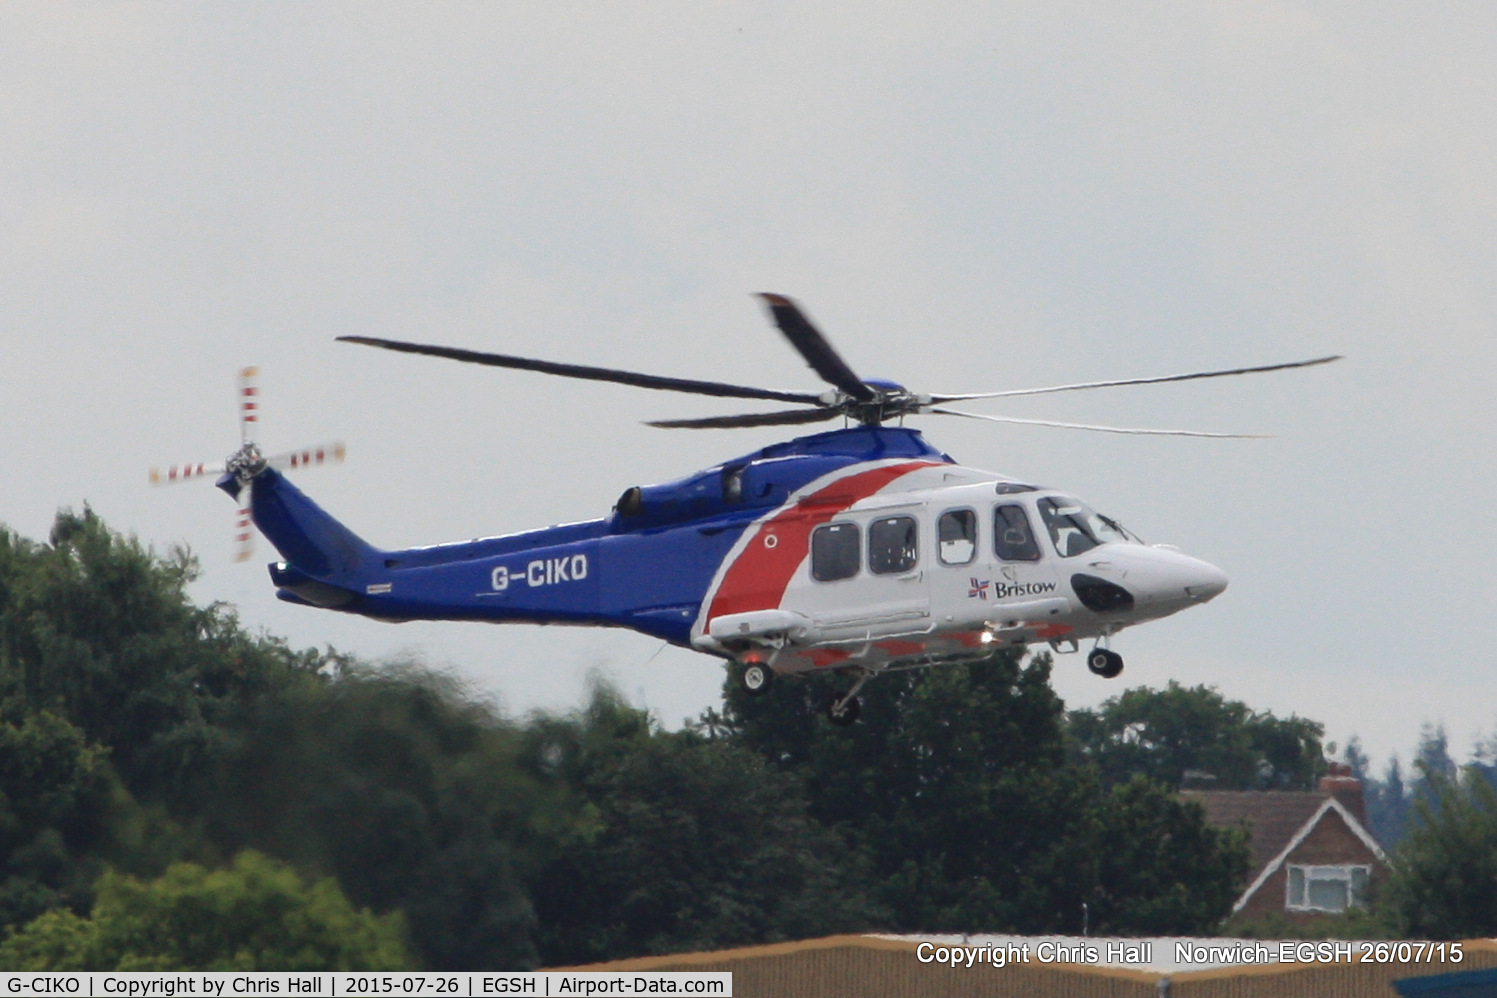 G-CIKO, 2014 AgustaWestland AW-139 C/N 41378, Bristow